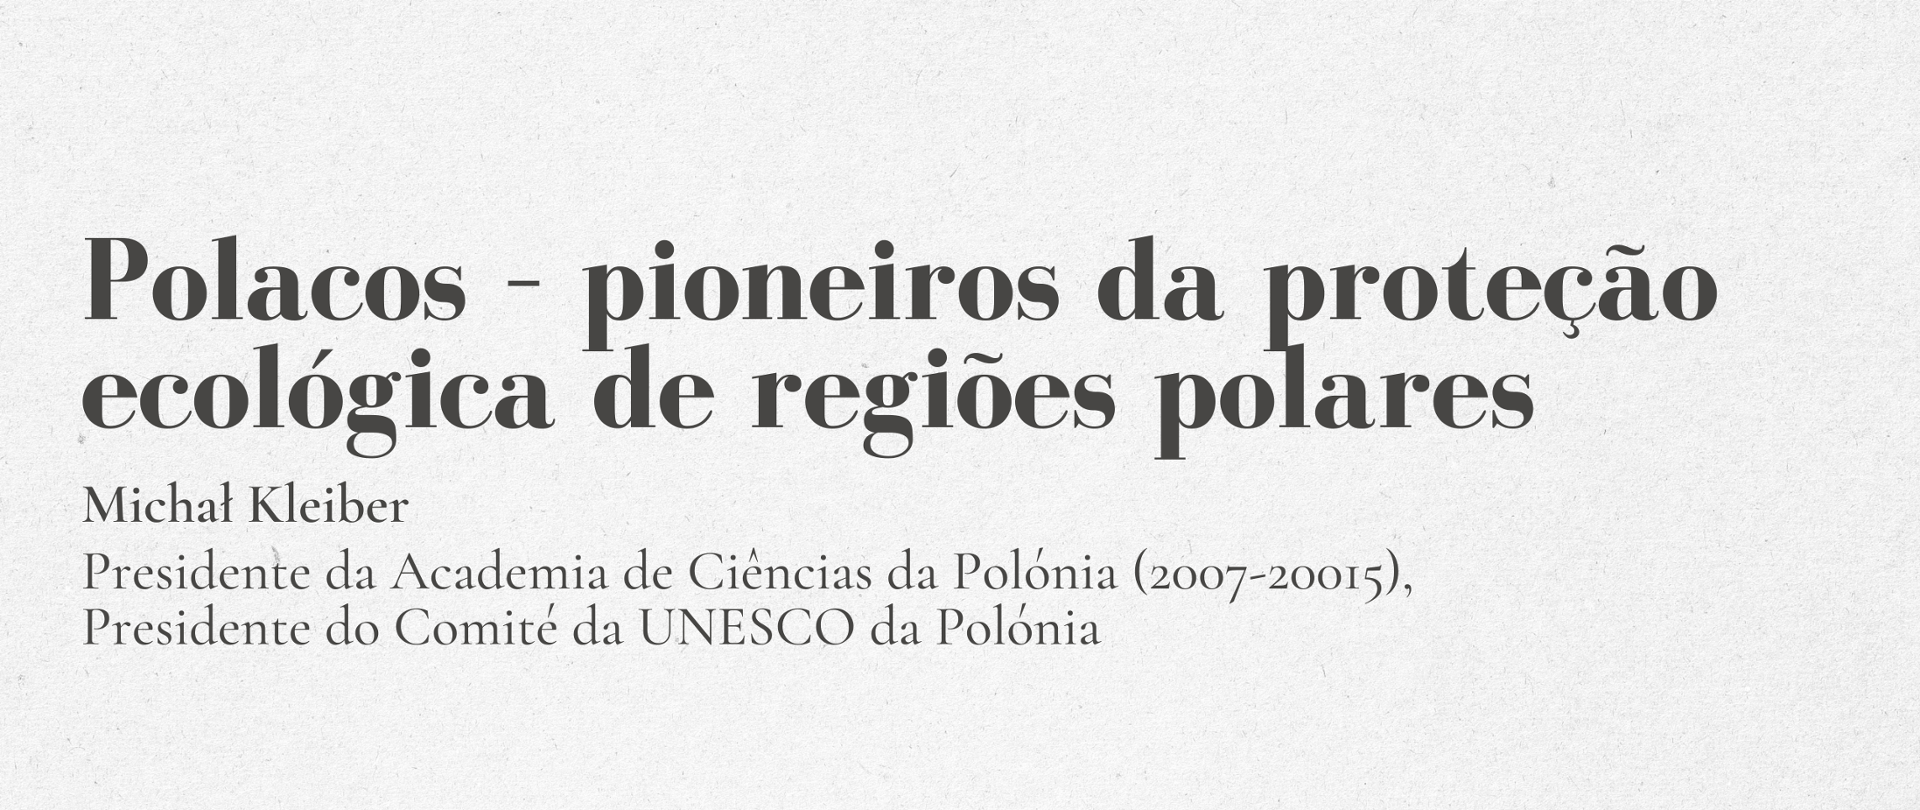 Polacos – pioneiros da proteção ecológica de regiões polares